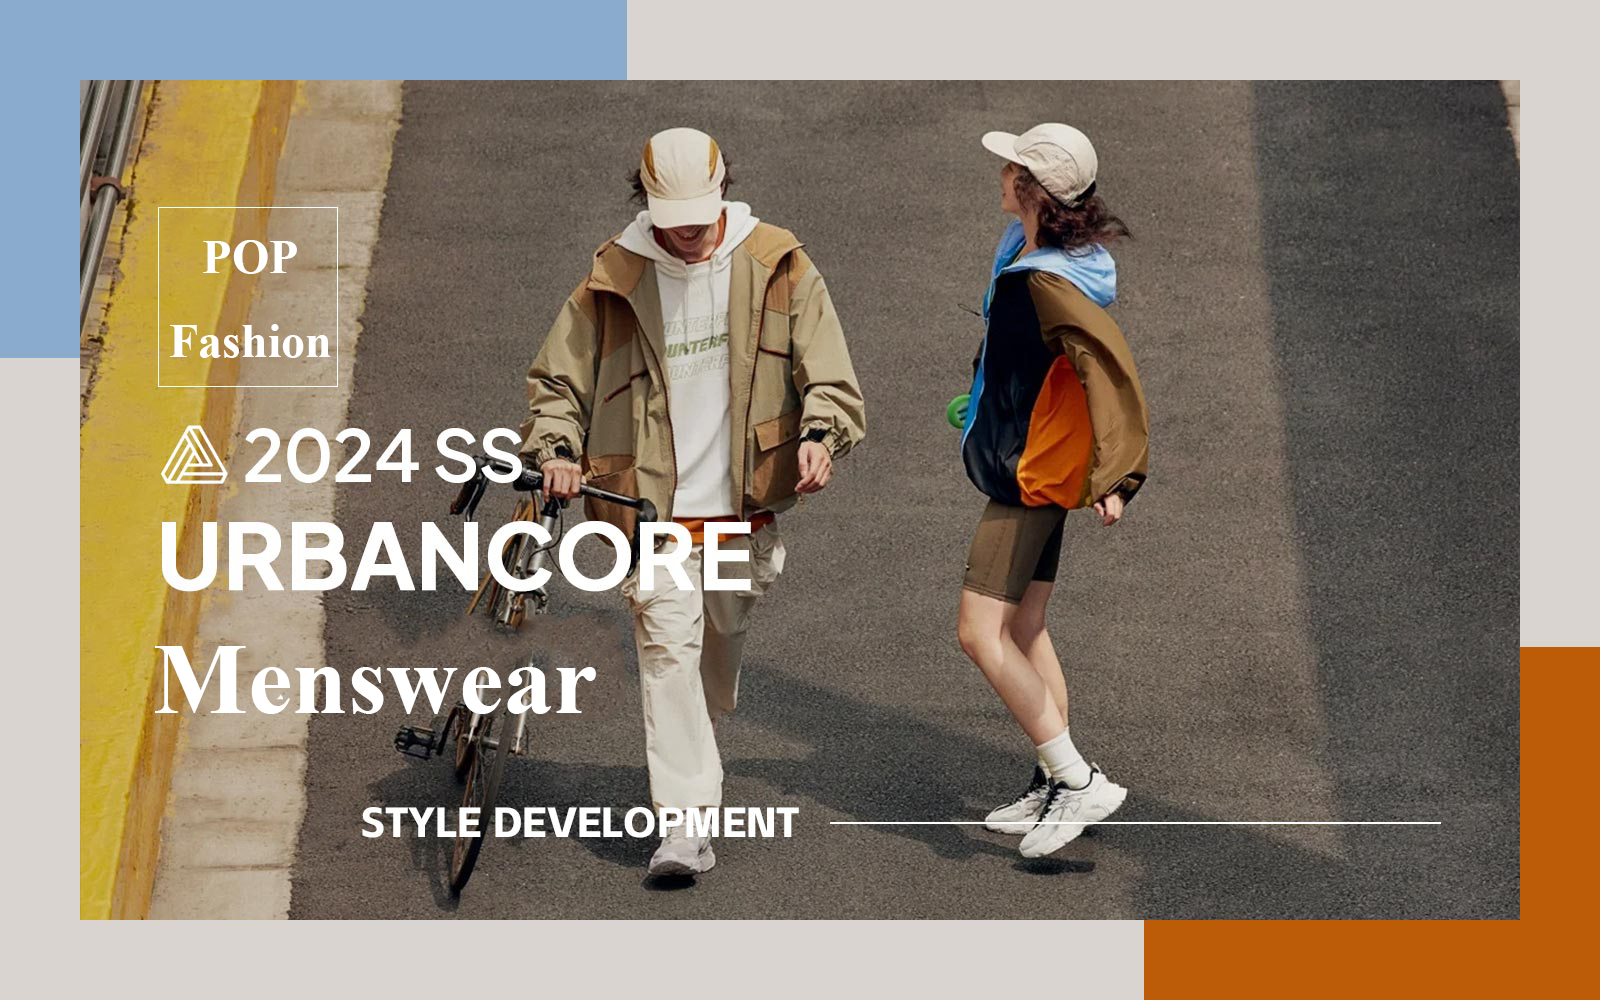 Urbancore -- The Design Development of Menswear